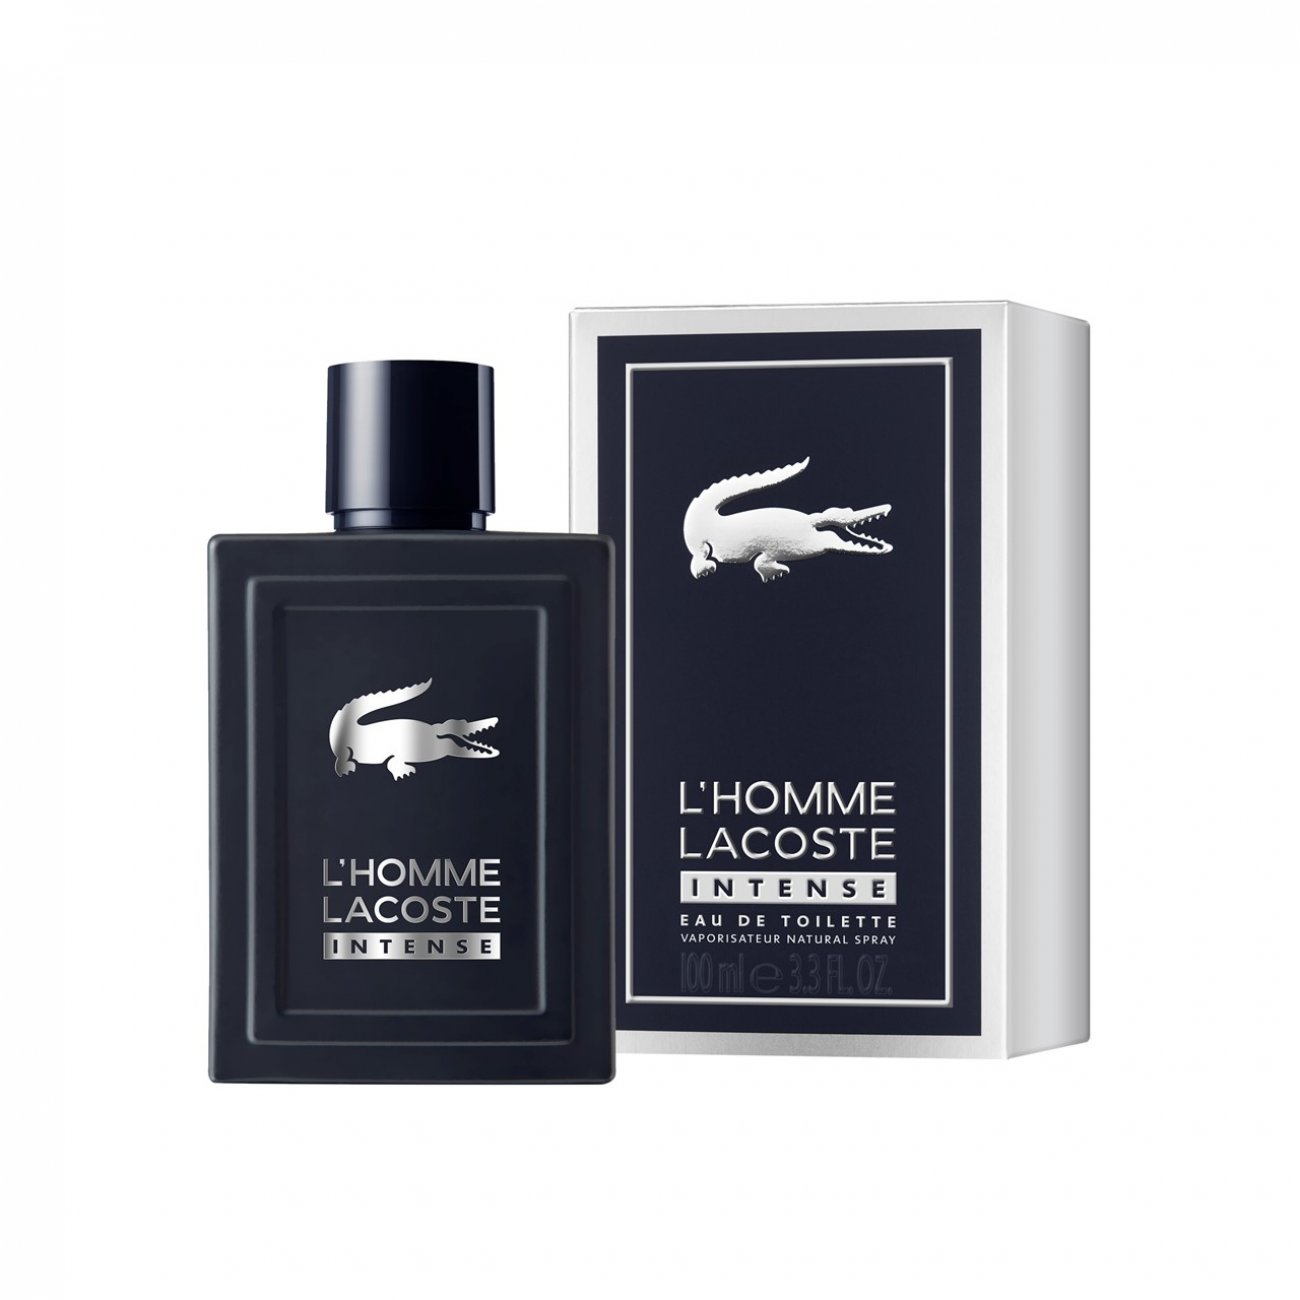 fokus Flere fritid Buy Lacoste L'Homme Lacoste Intense Eau de Toilette · USA